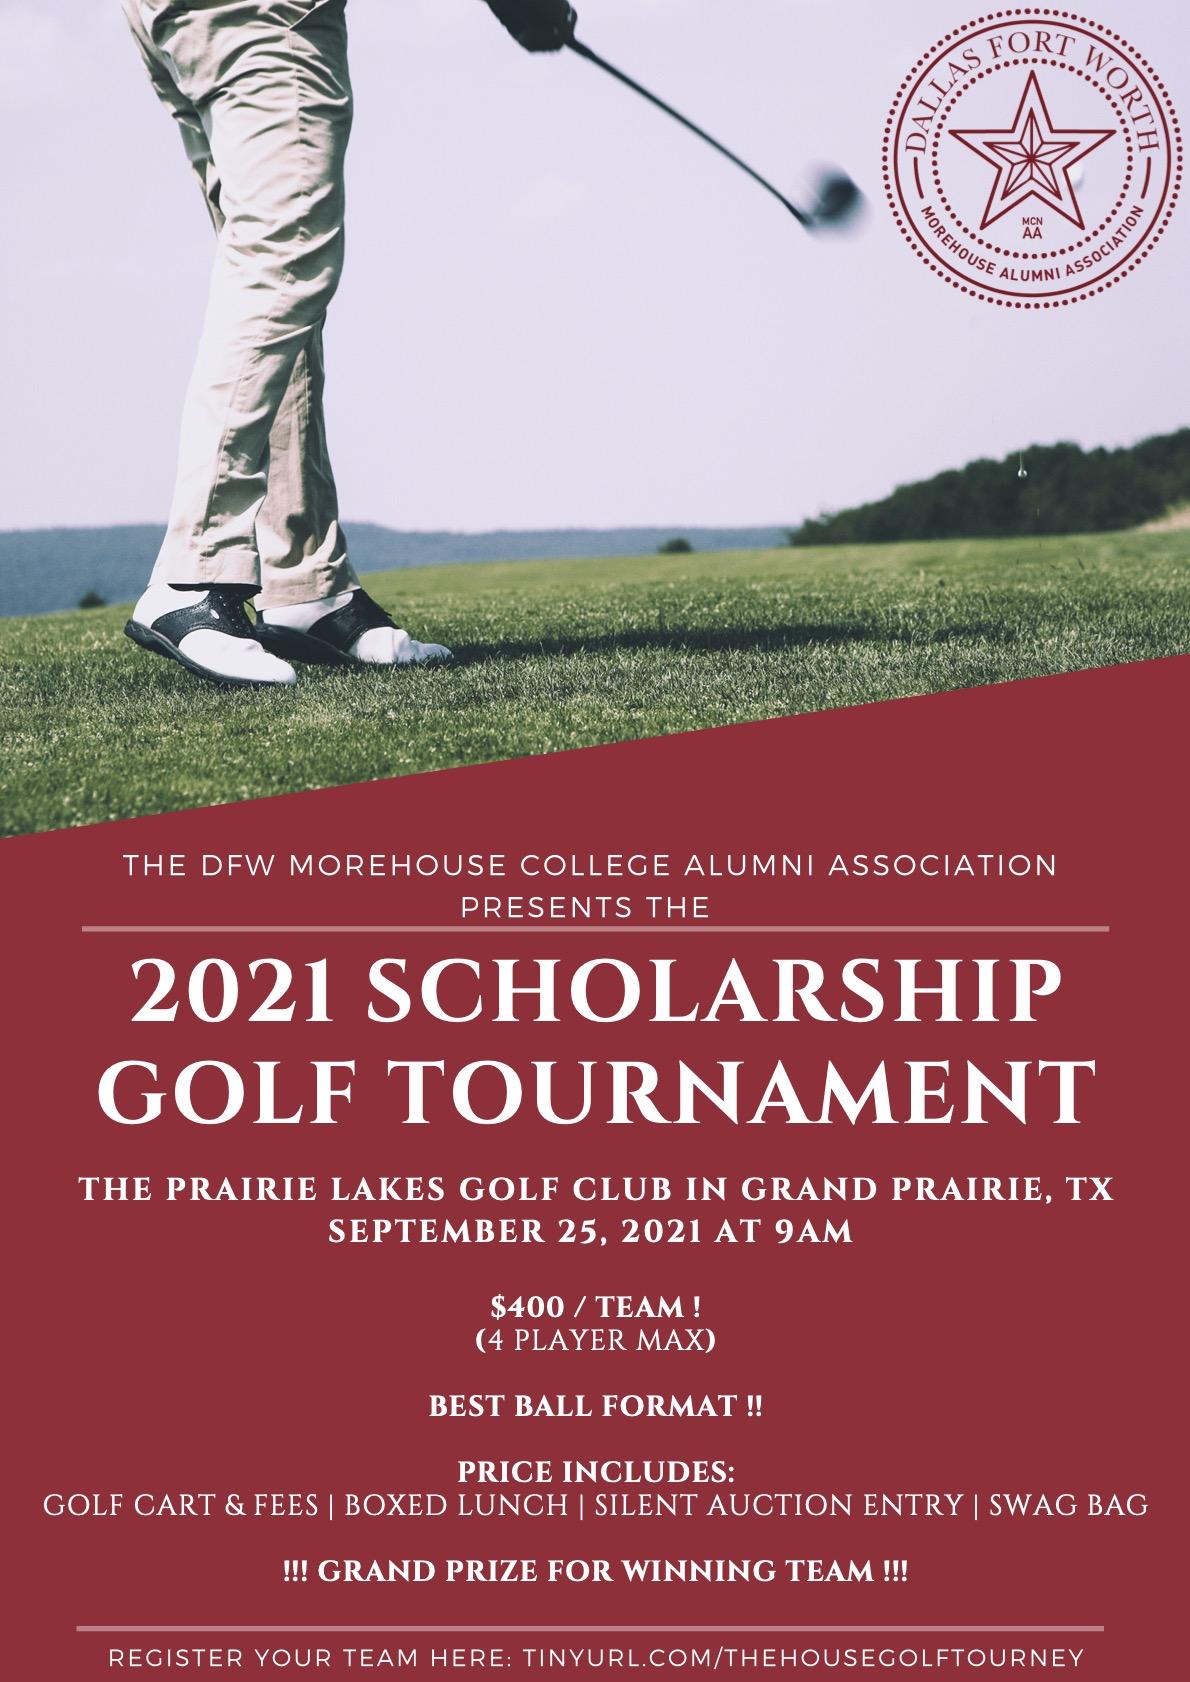 The DFW Morehouse Alumni Scholarship Golf Tournament